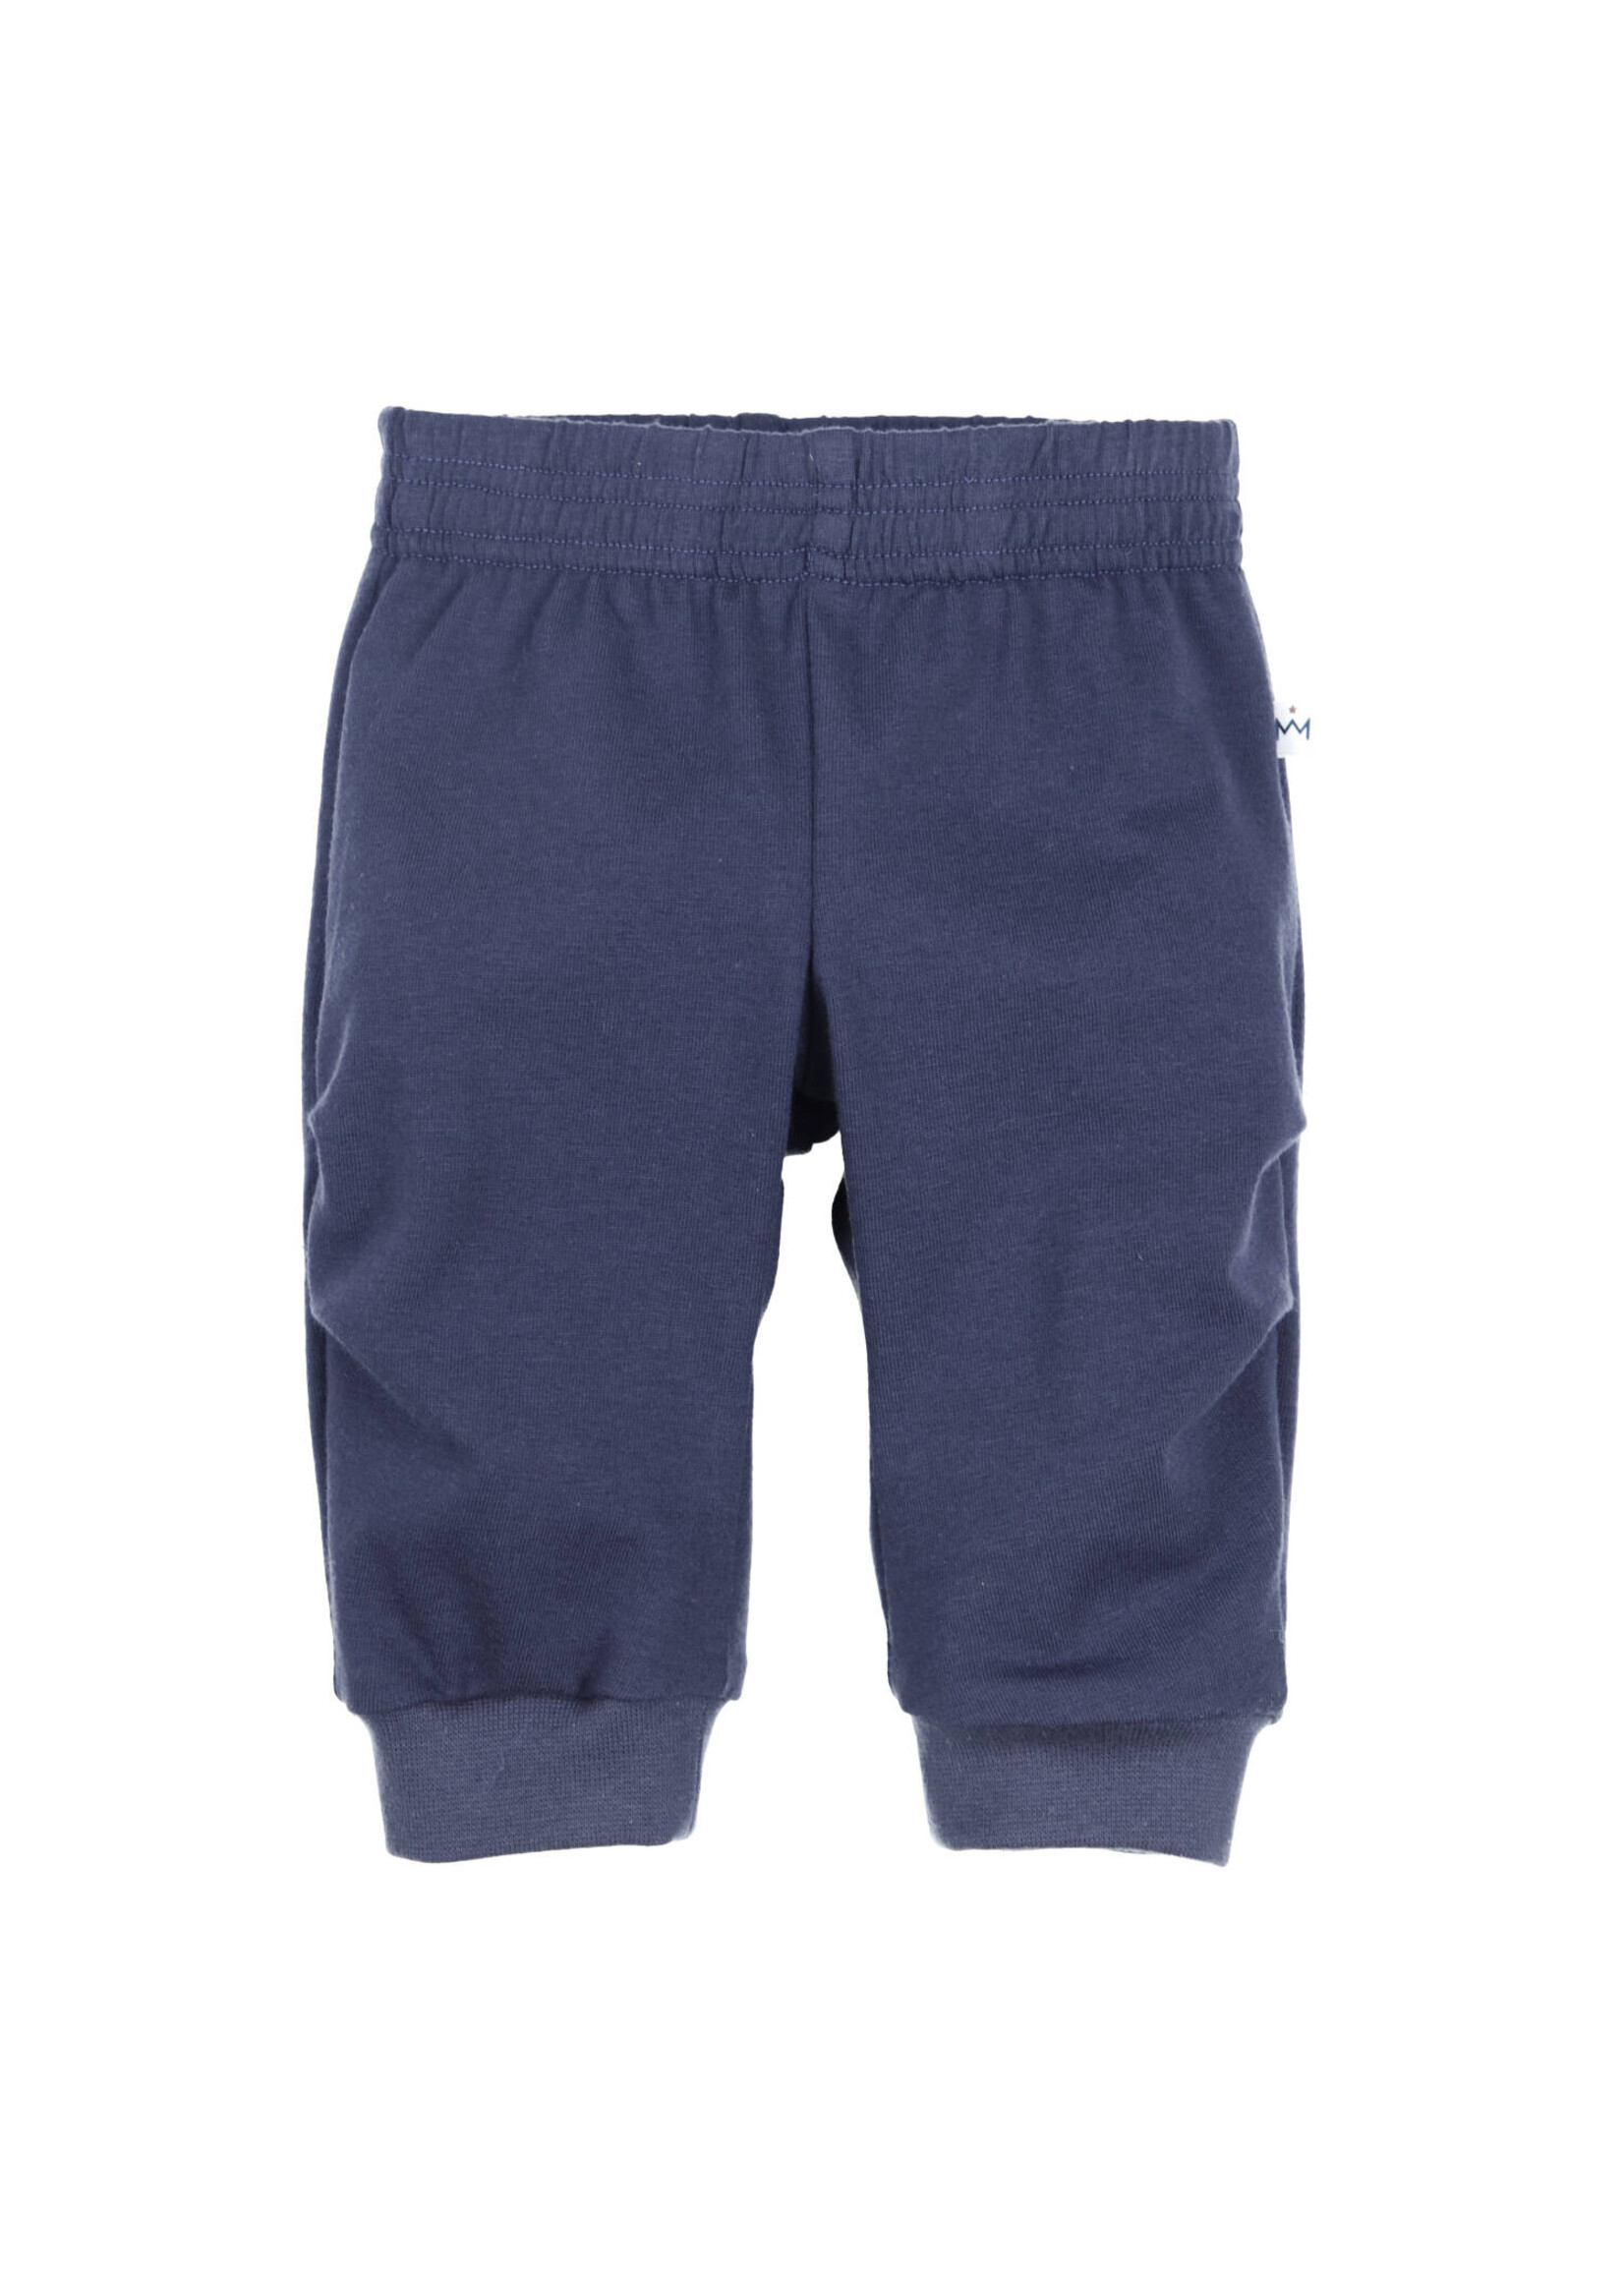 Gymp Boys Trousers Aerobic 410-4098-21 Dark Blue